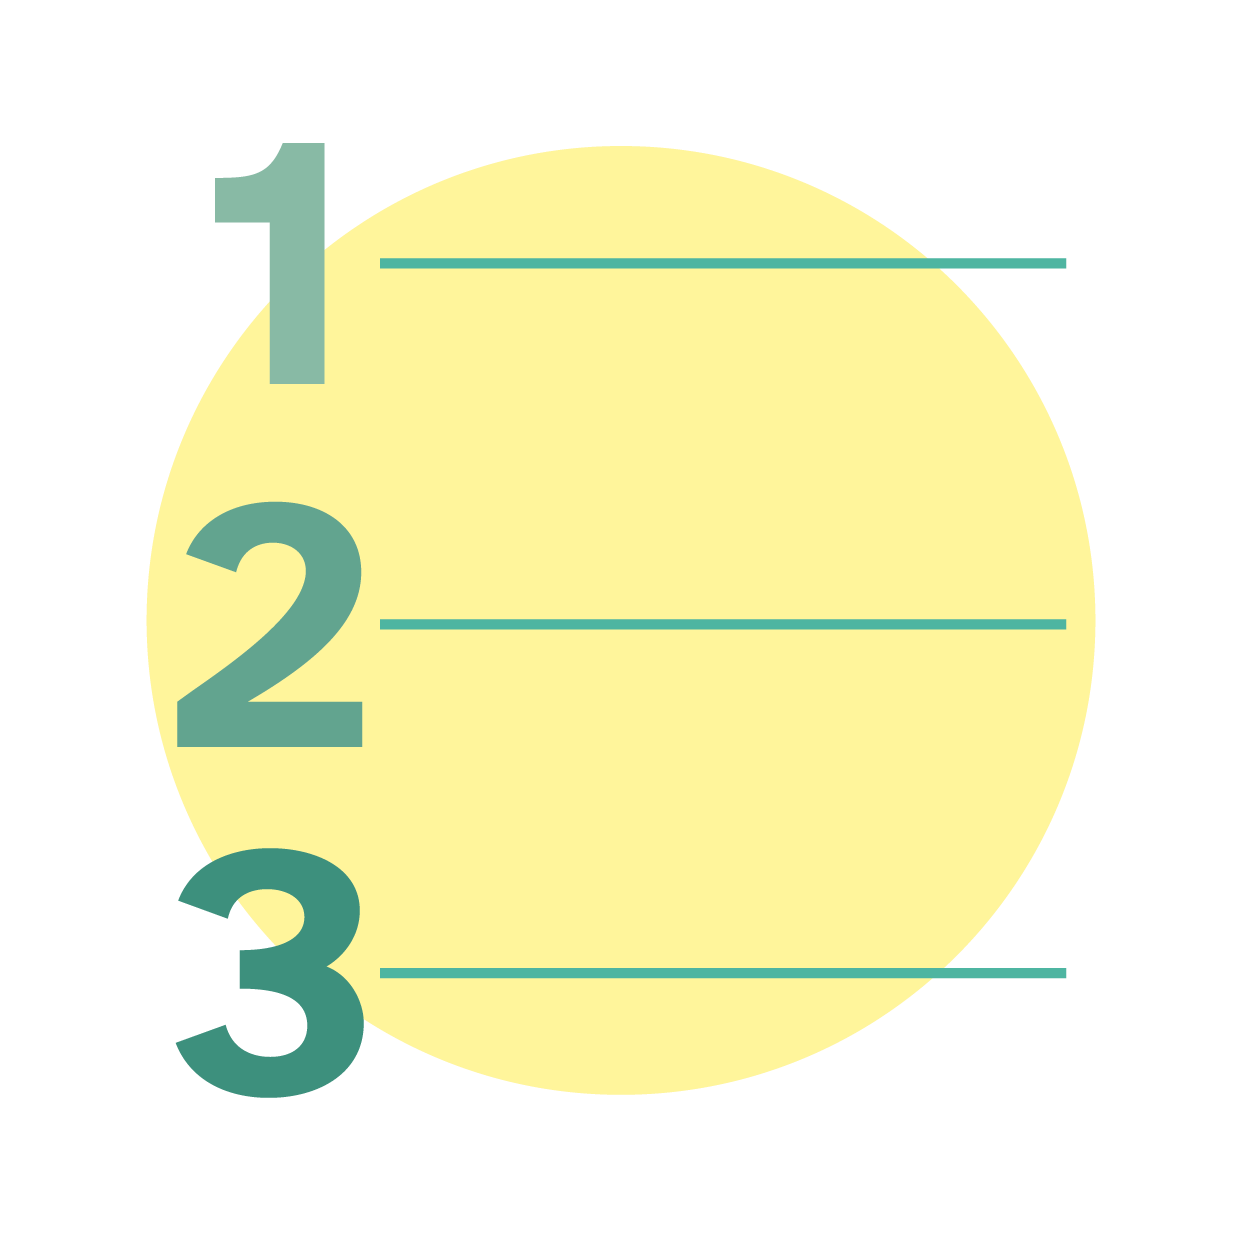 la imagen muestra los Números uno, dos y tres ordenados consecutivamente de forma vertical, al lado de cada uno de ellos aparece una línea recta negra.